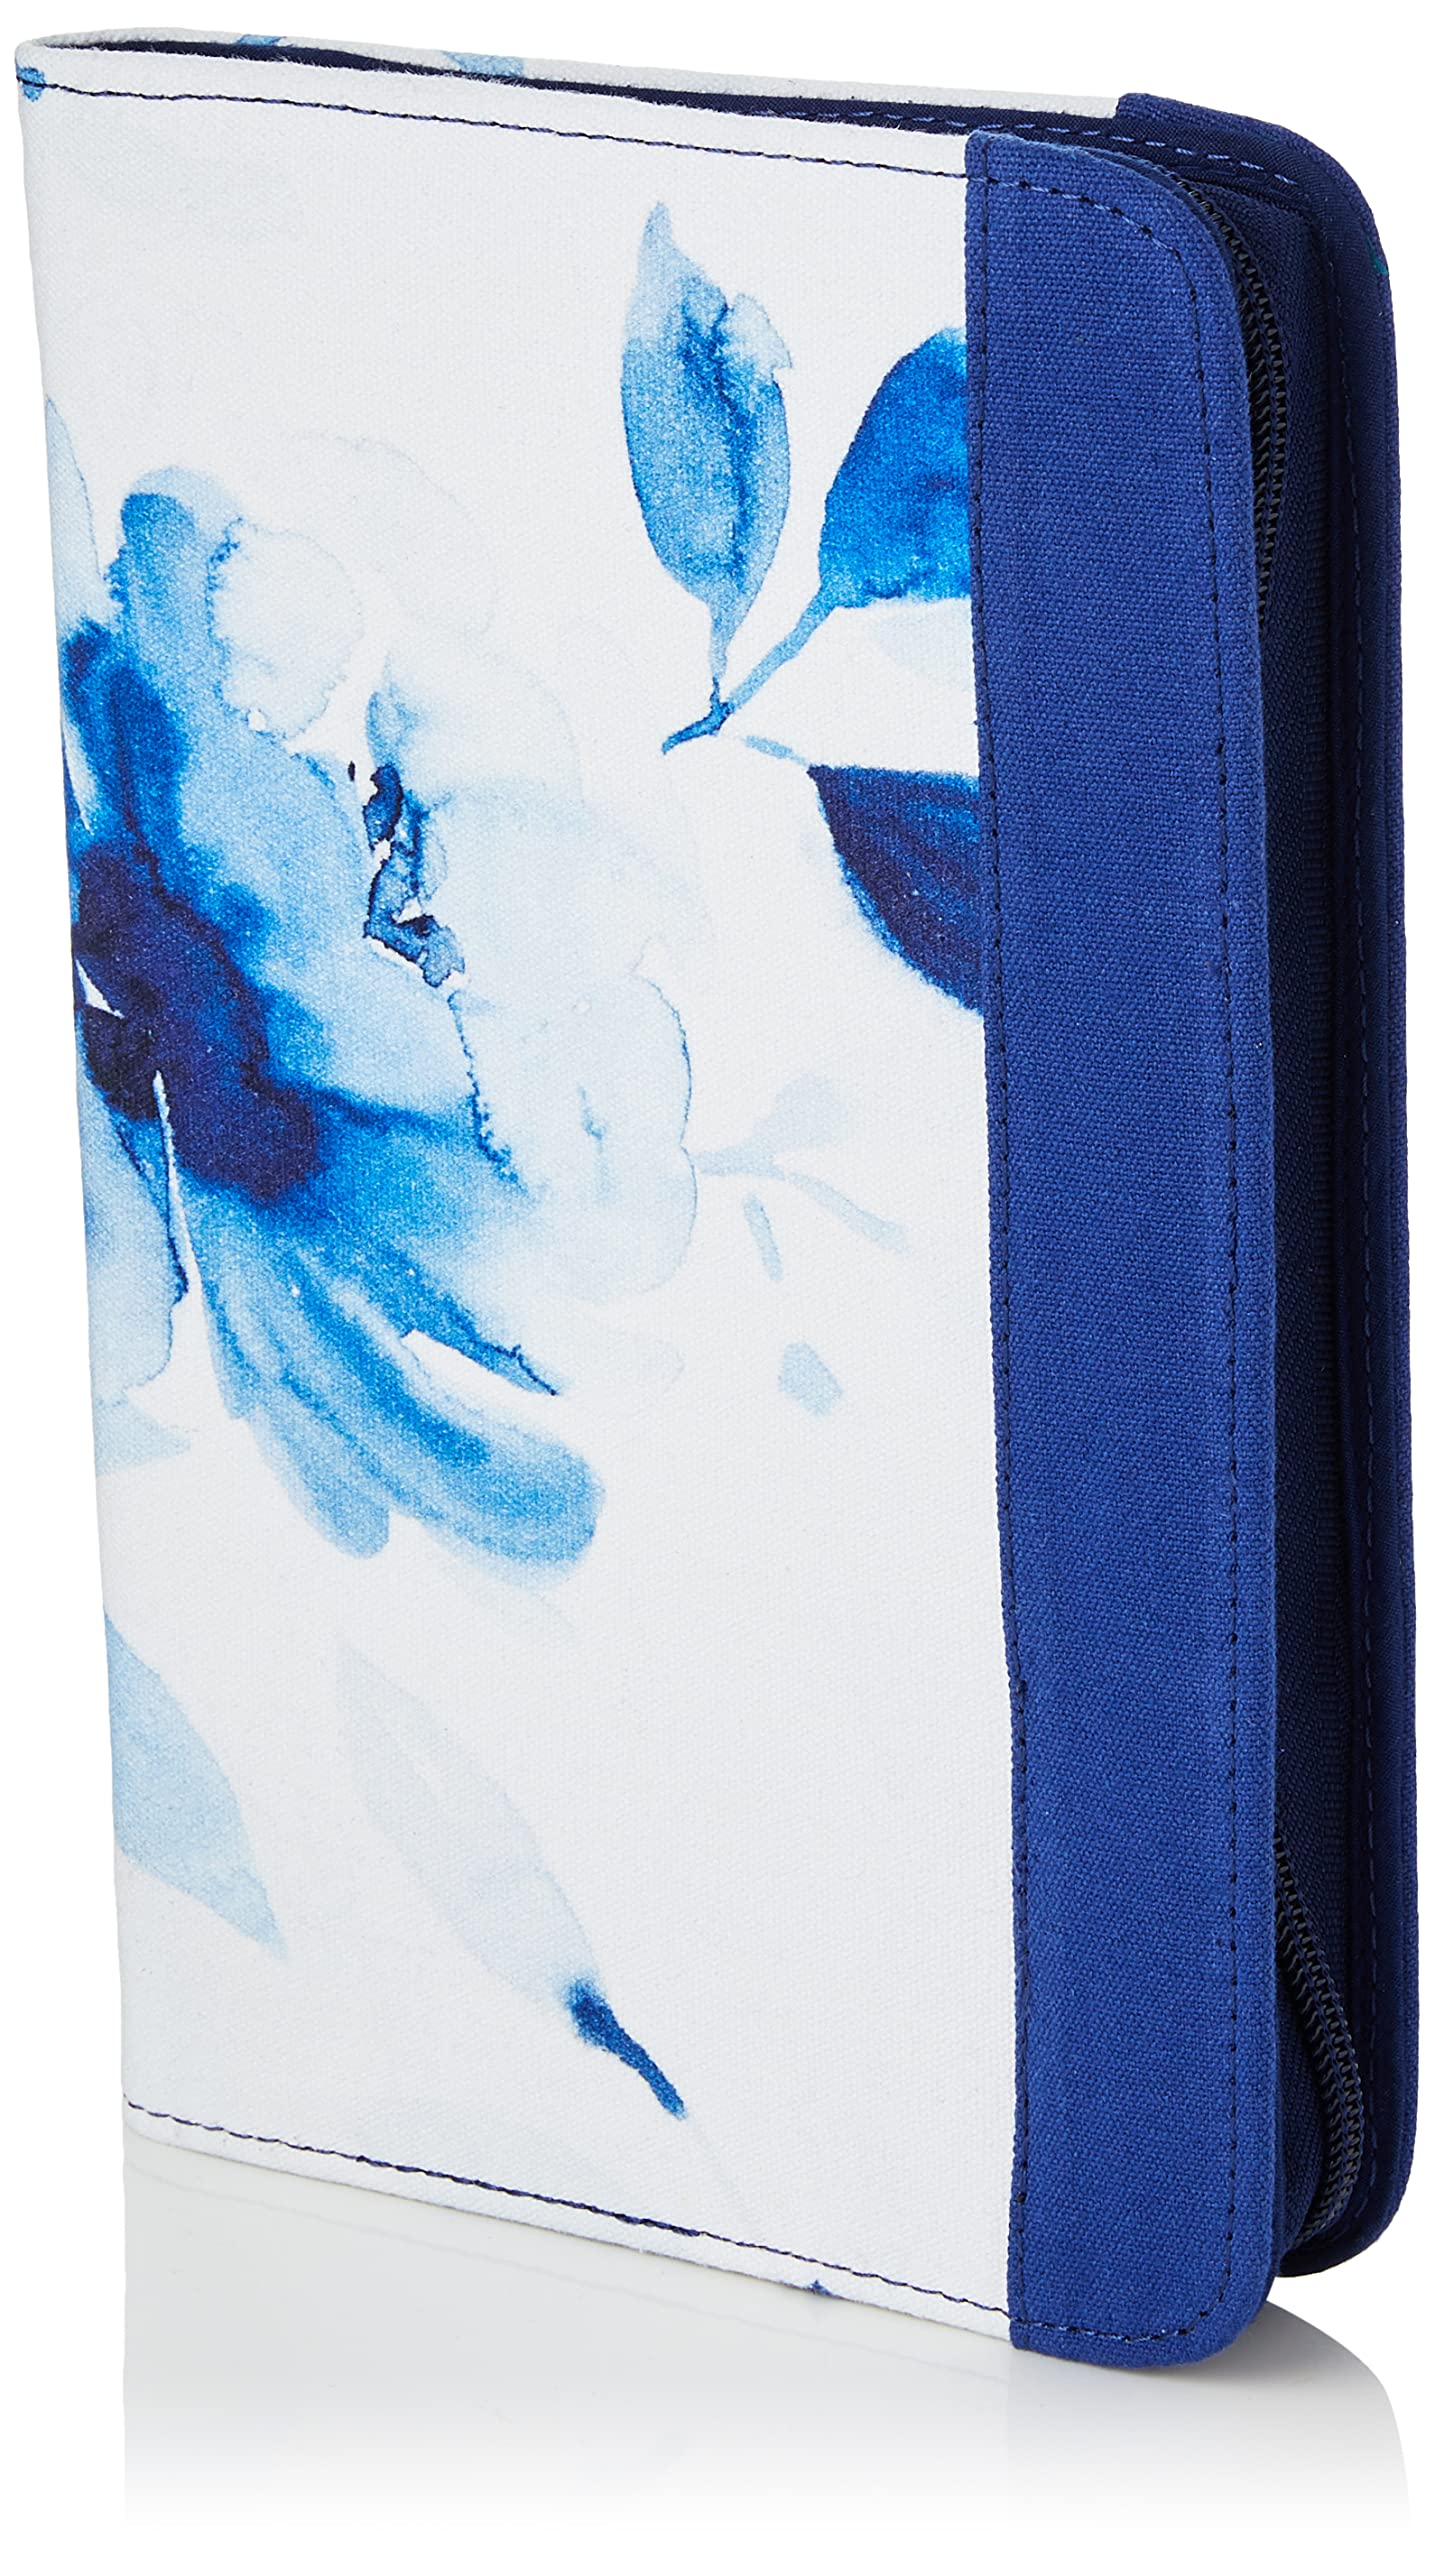 KnitPro K12851 Double-Spitze-Nadel-Etui, Blau, 16 x 24,5 x 2 cm